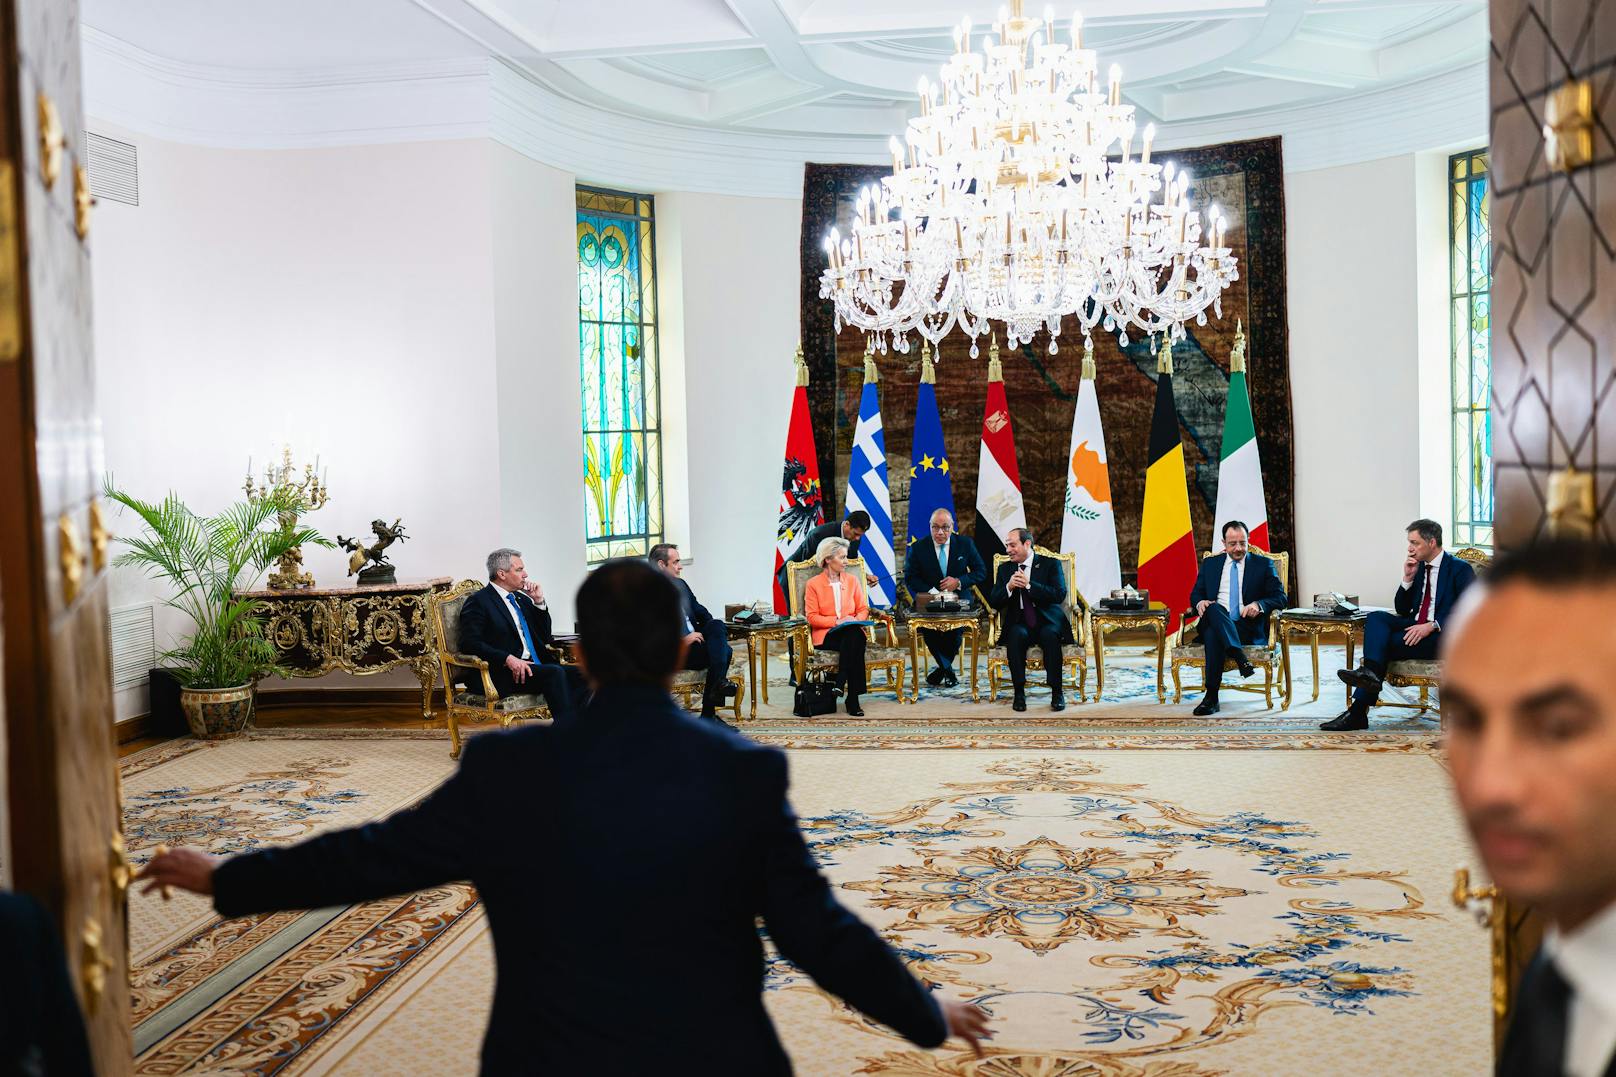 Der Deal wurde mit Nehammers Amtskollegen aus Griechenland, Italien und Belgien beschlossen. In der Mitte: EU-Kommissionspräsidentin Von der Leyen und Ägyptens Präsident al-Sisi.